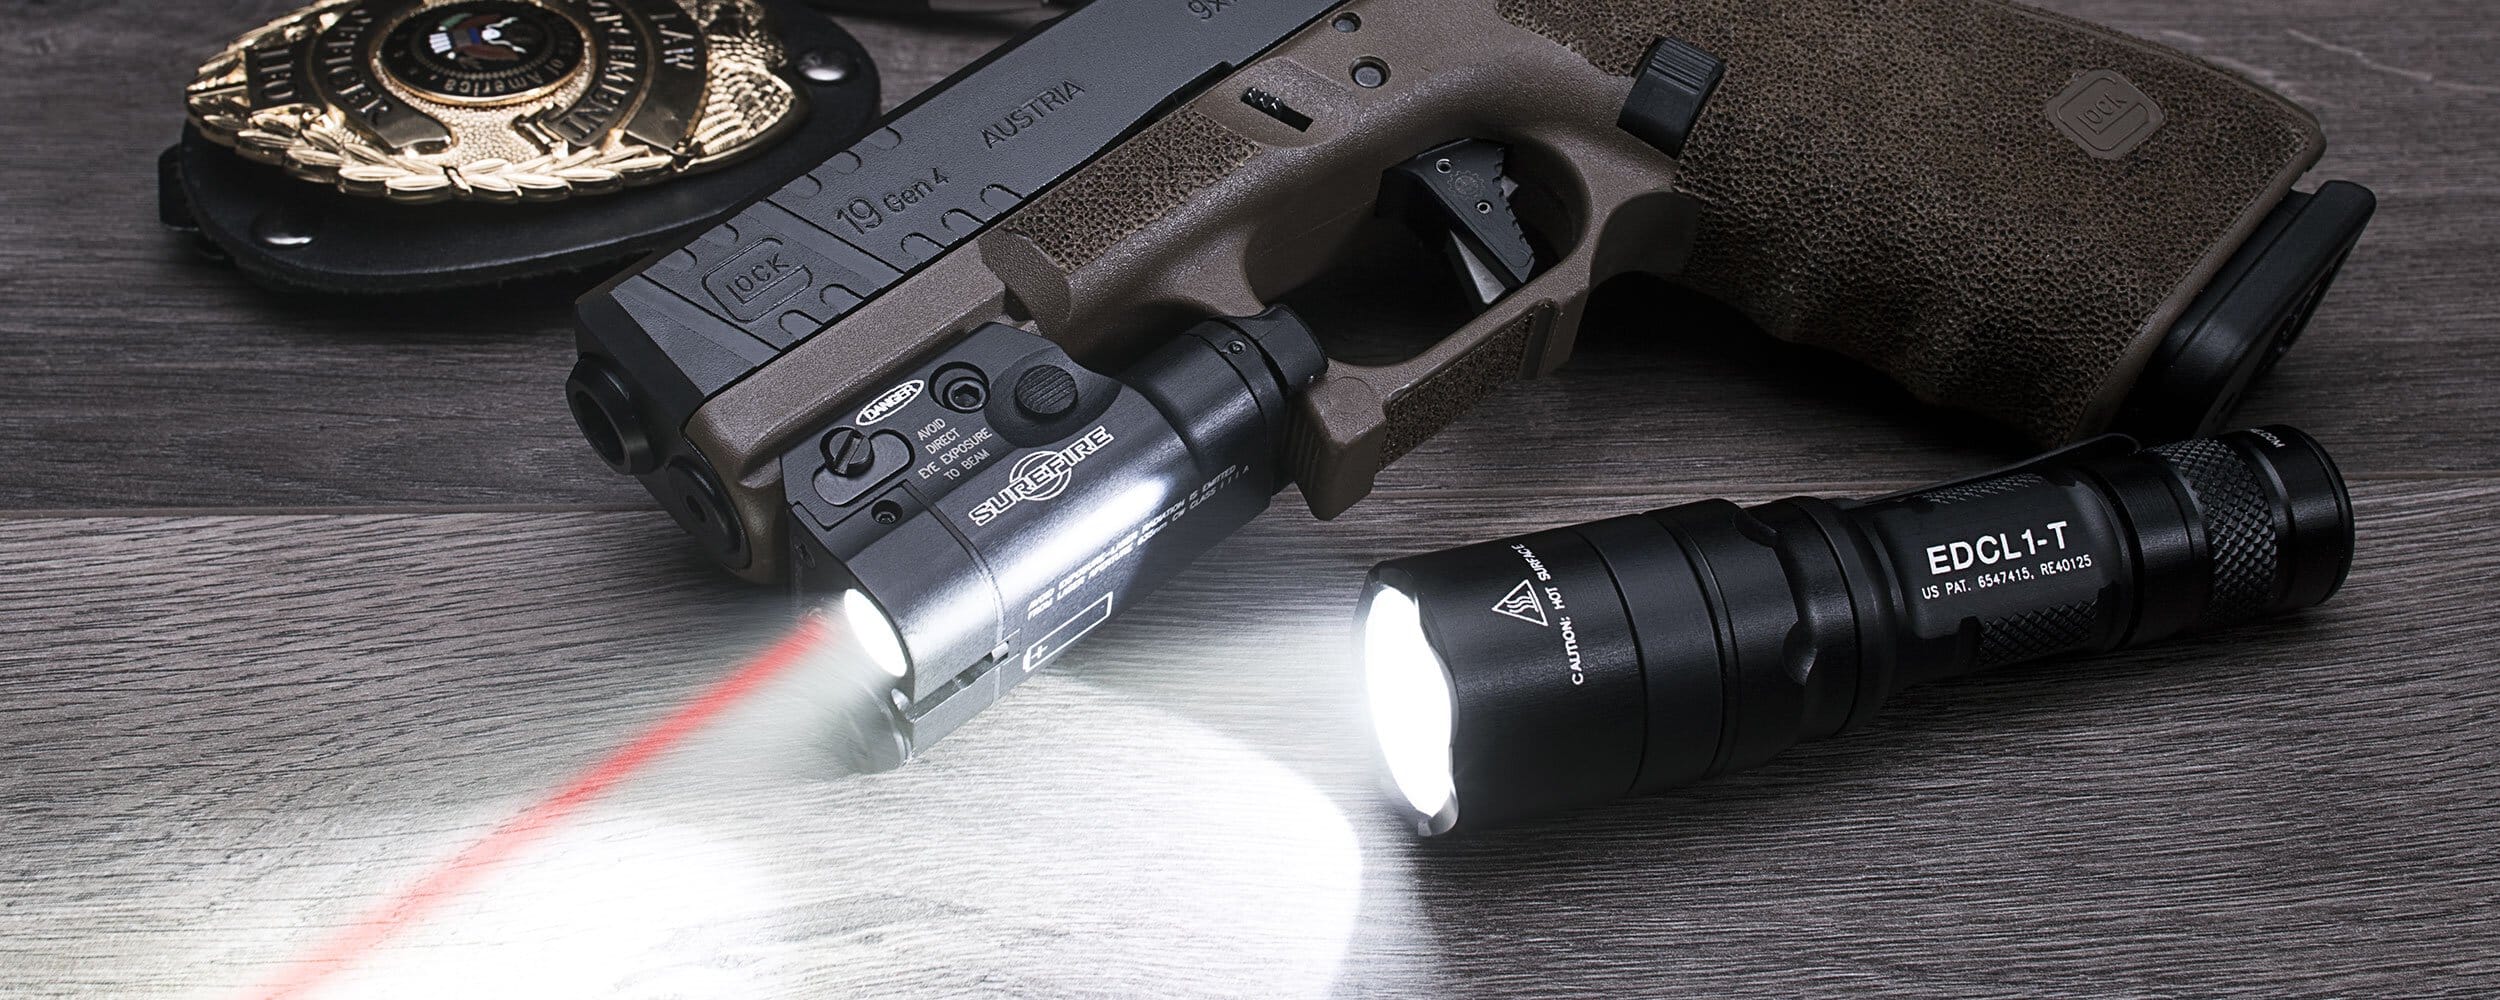 xc2 weaponlight 11